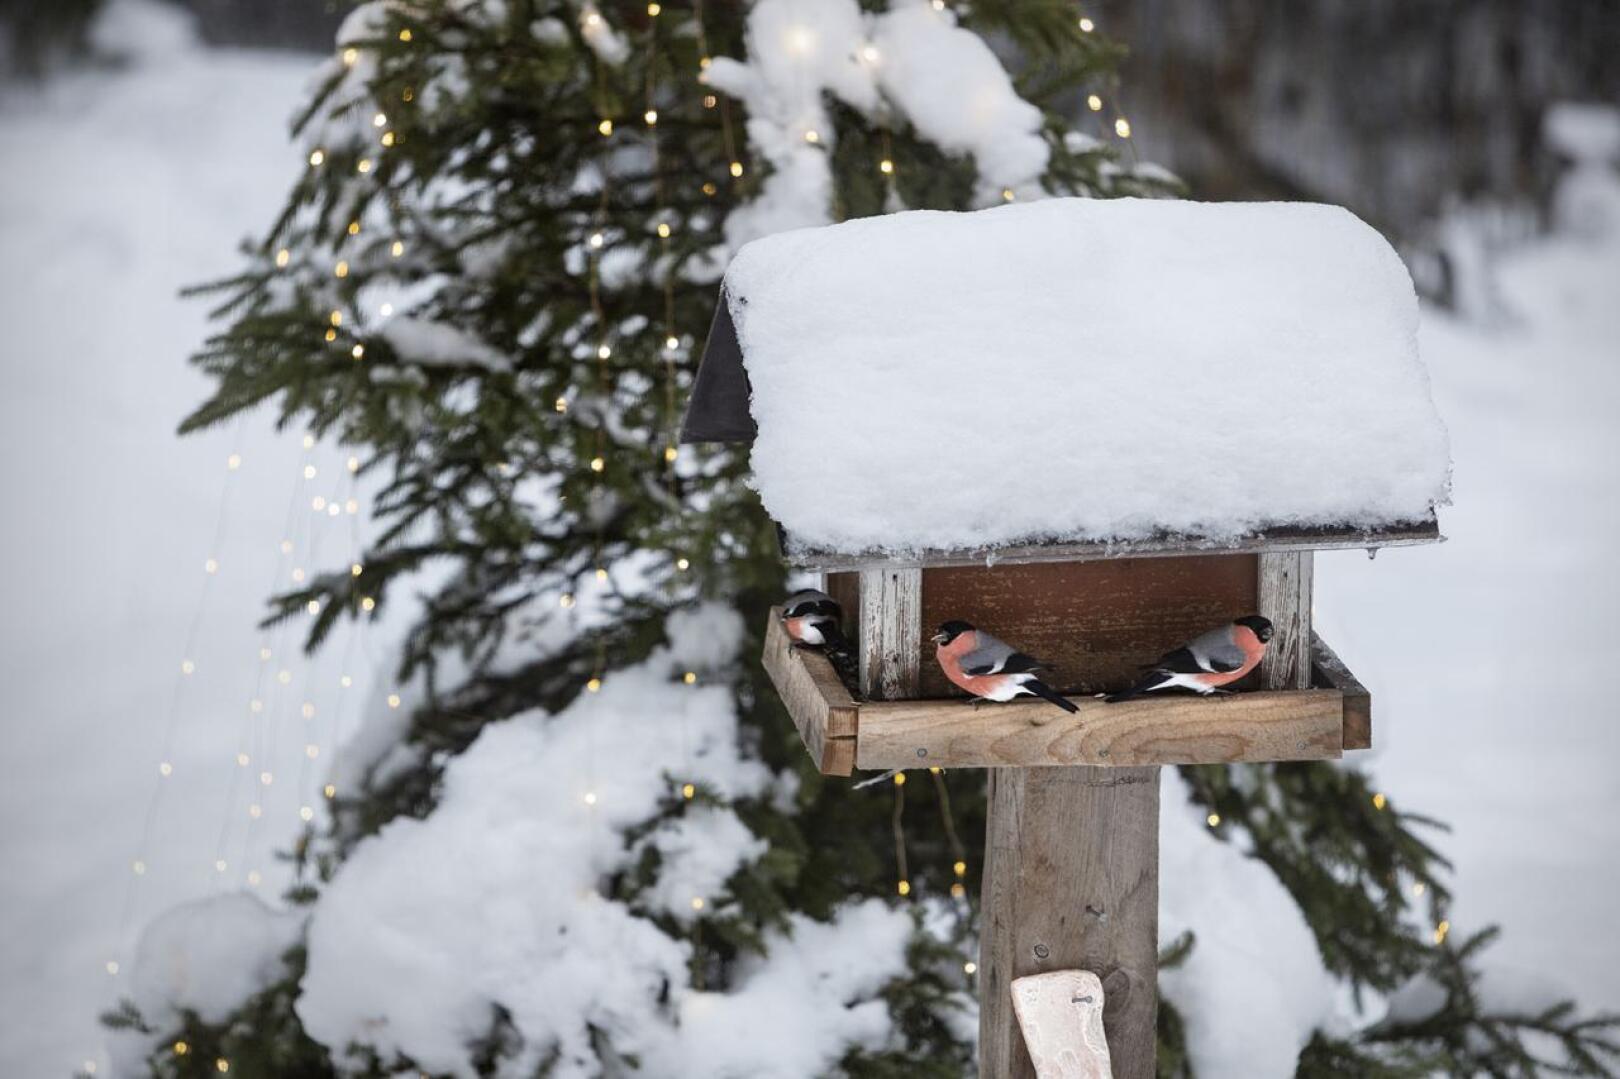 Linnut uskaltavat tulla lintulaudalle syömään, kun välillä voi mennä joulukuuseen suojaan. Punatulkkuja käy ainakin kolme.